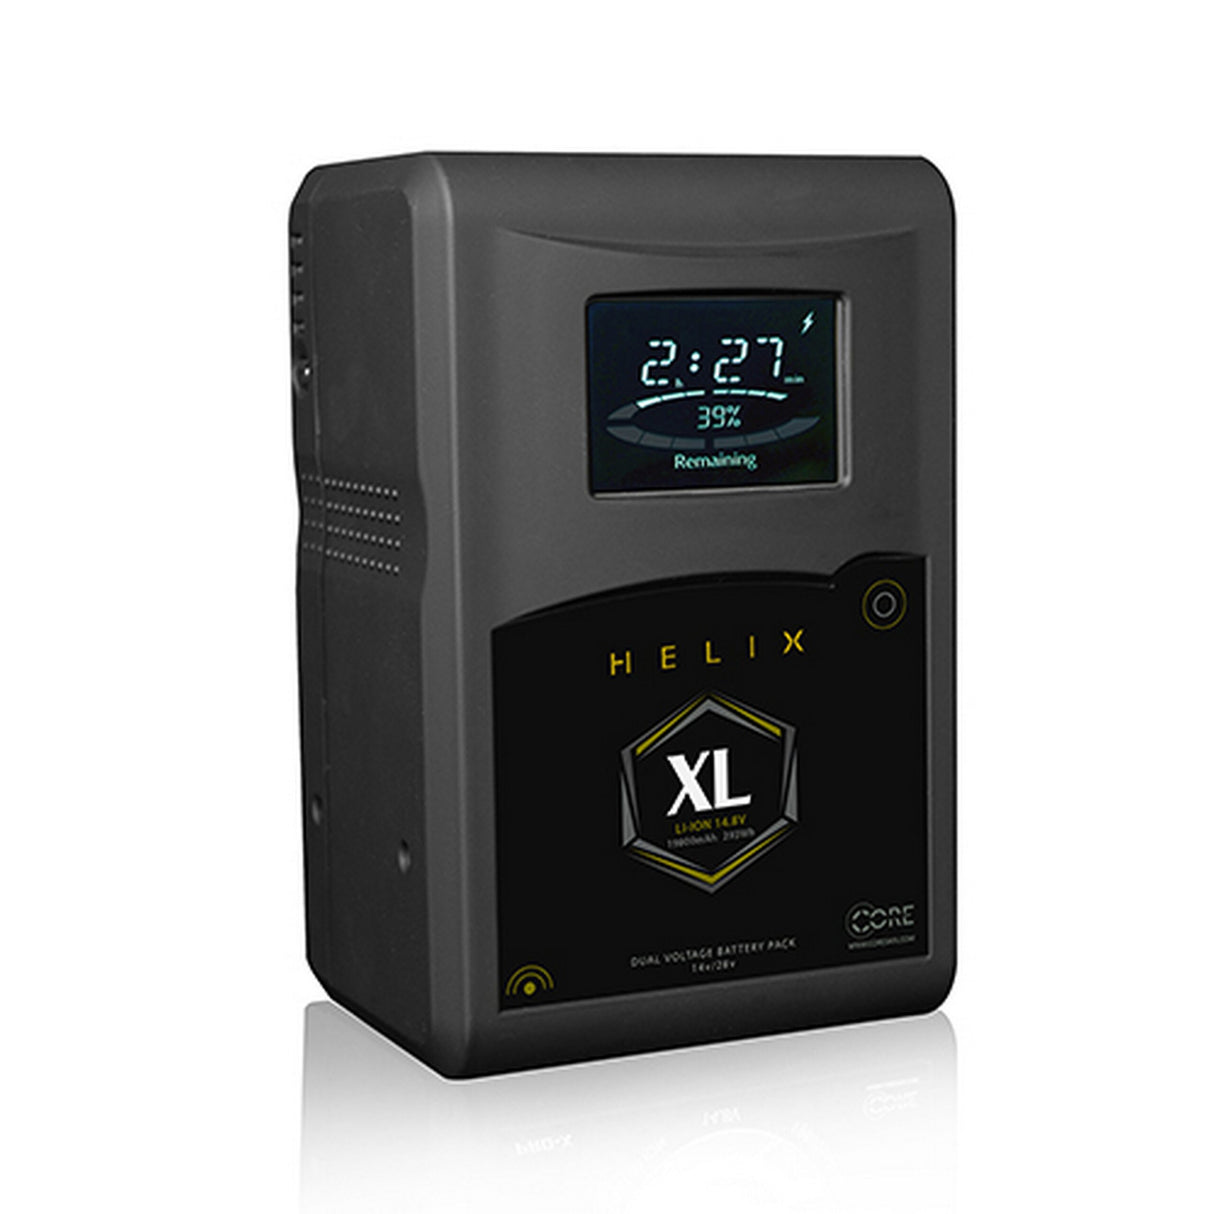 Core SWX HLX-XLAG 293Wh Helix XL Dual Voltage Gold Mount Battery